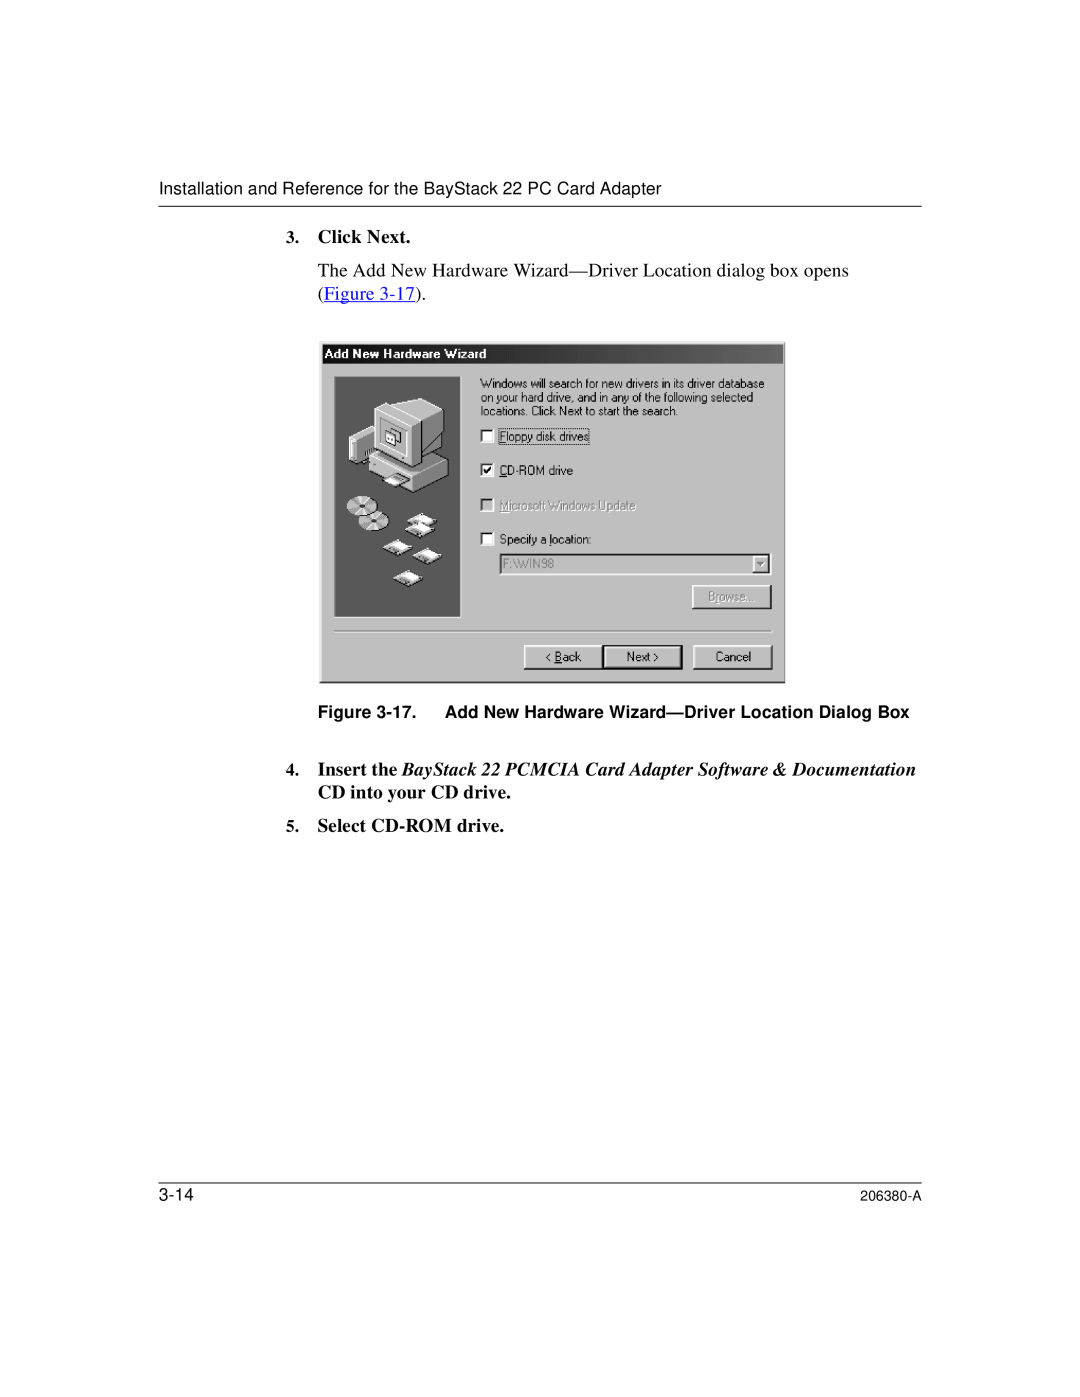 3Com 206380-A manual Click Next, Select CD-ROMdrive, 3-14 